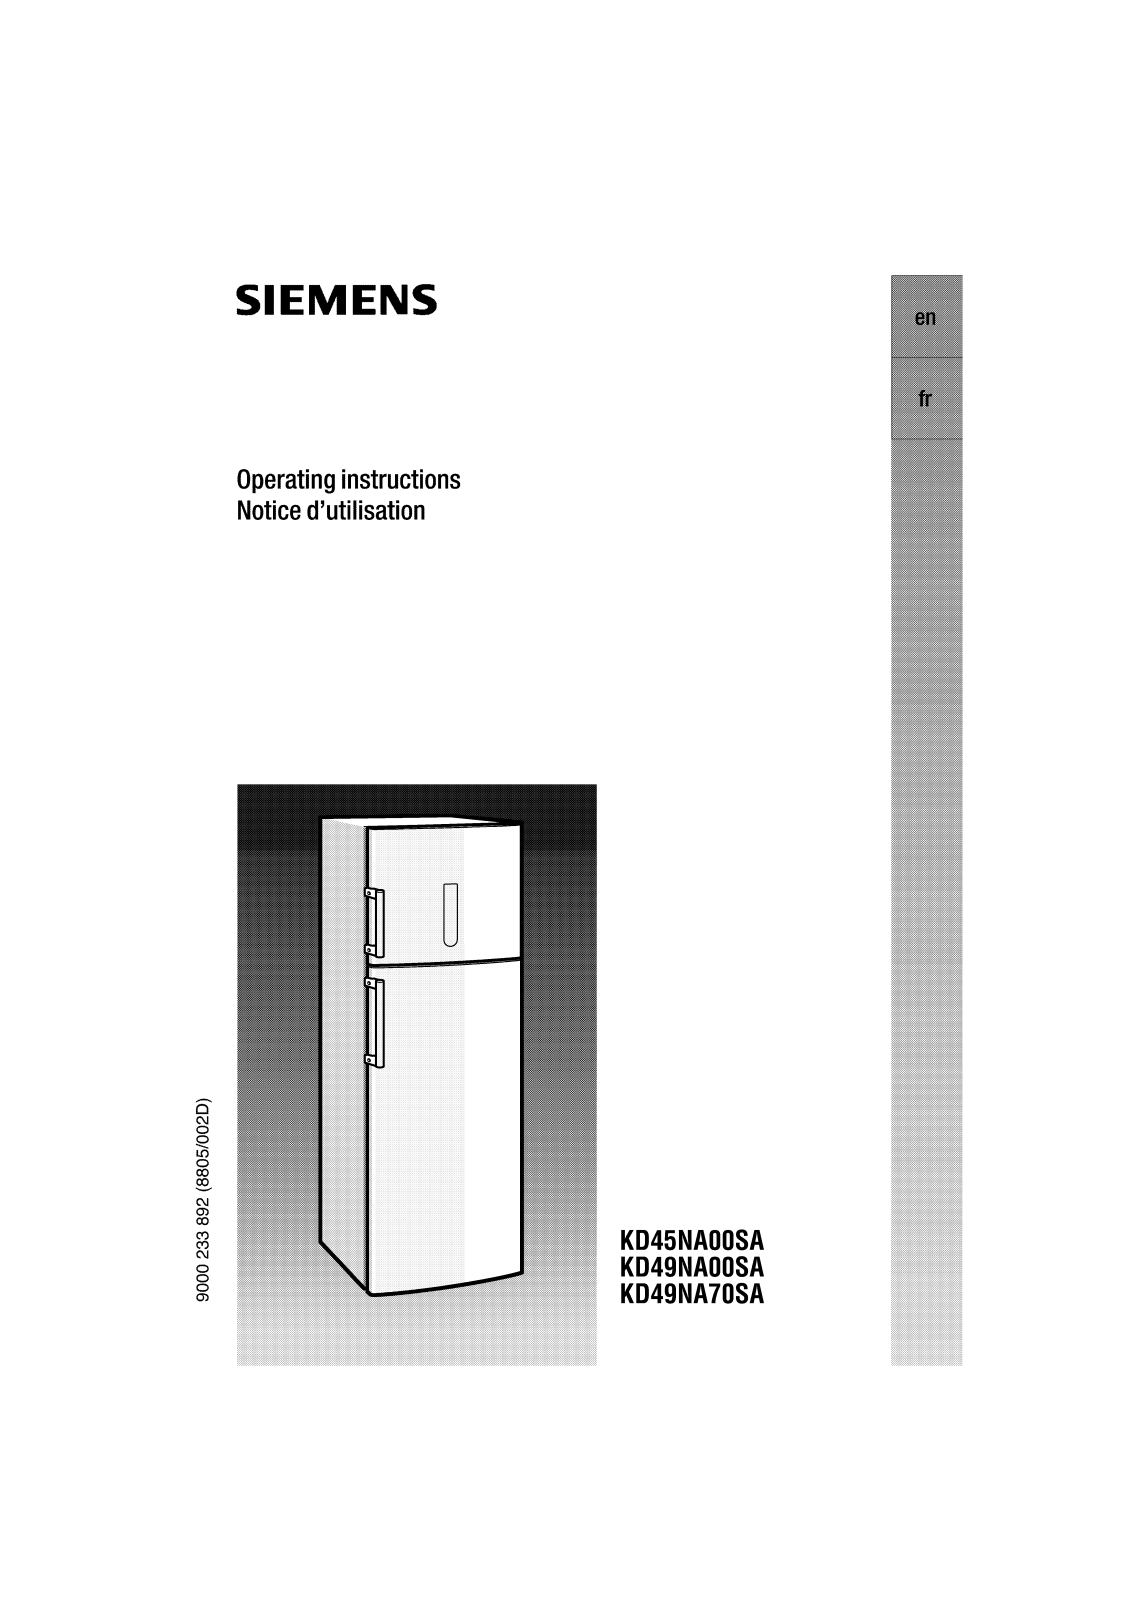 Siemens KD49NA00SA, KD49NA70SA, KD45NA00SA Manual